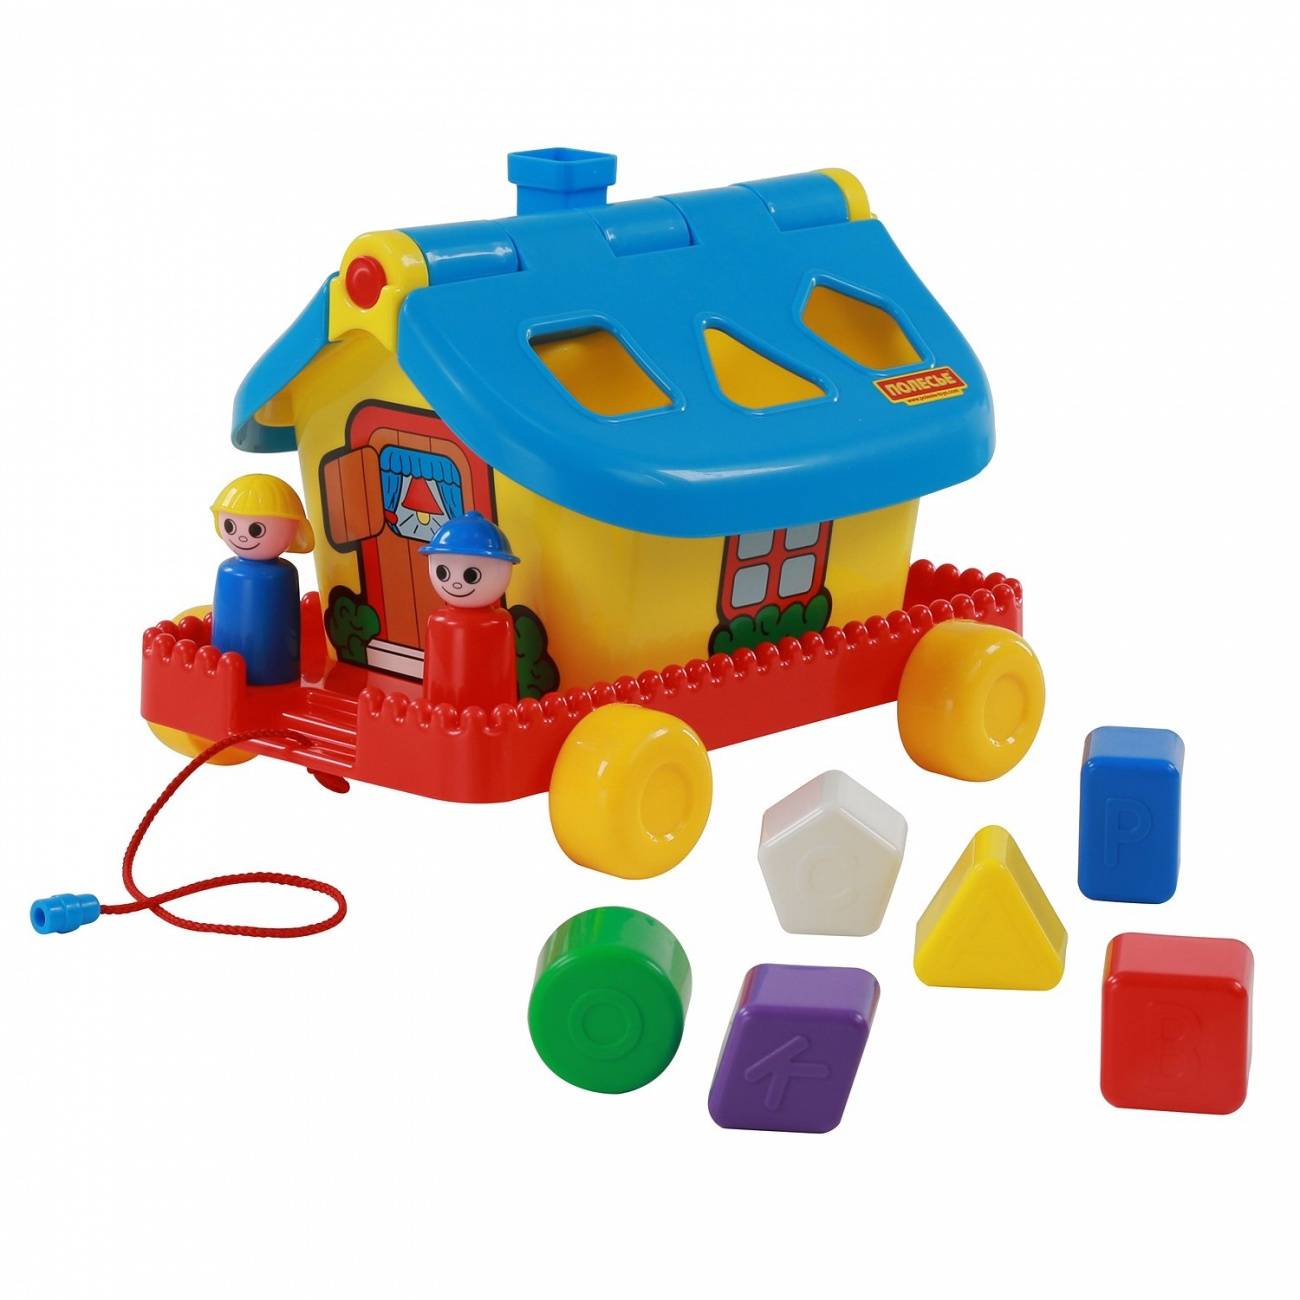 Садовый домик на колесиках, игрушка Полесье 56443